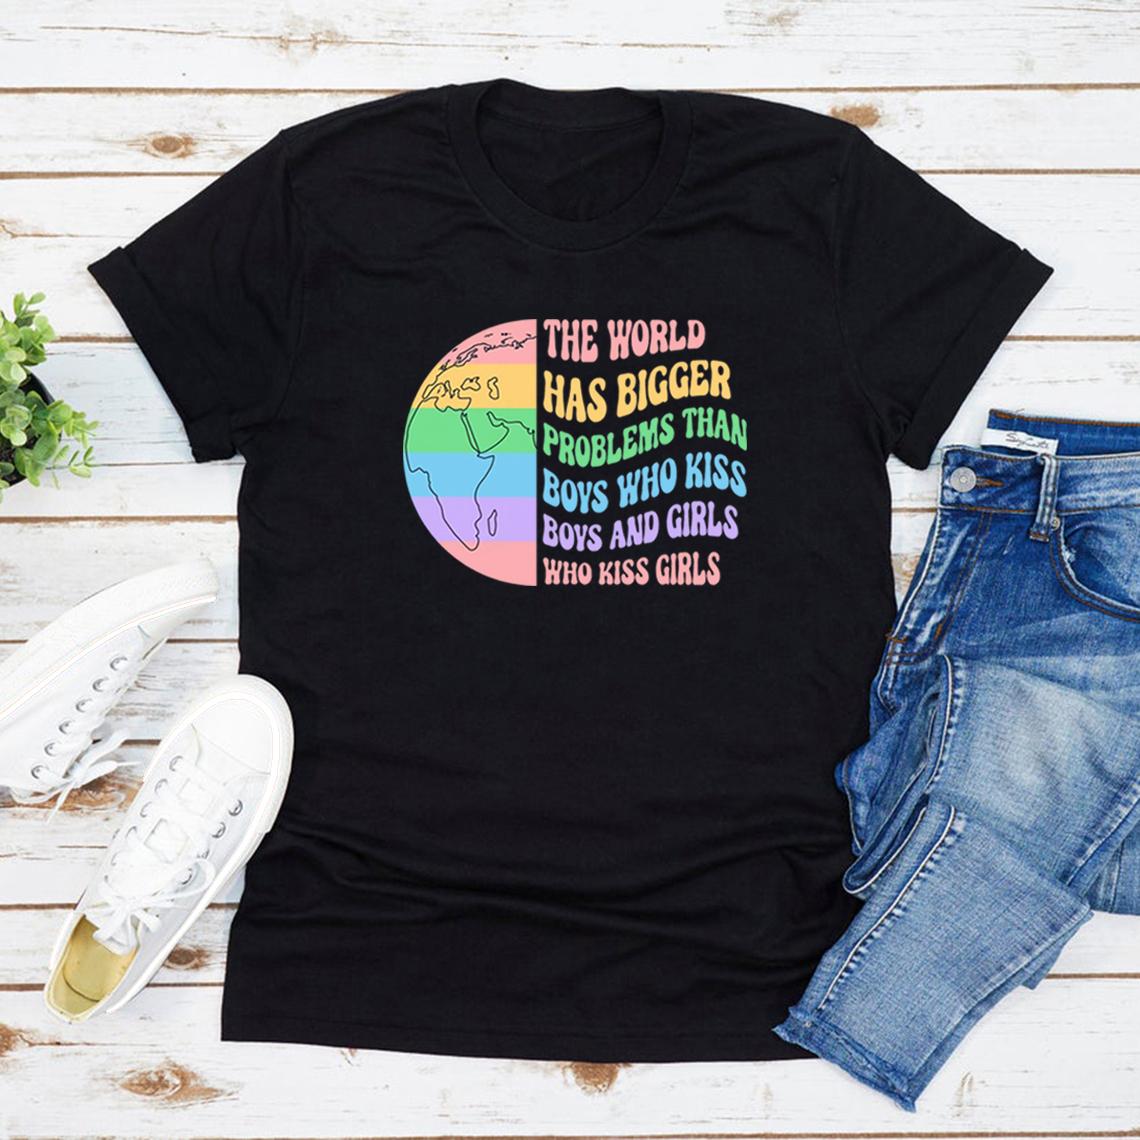 Bicheng De wereld heeft grotere problemen dan jongens die kussen Jongens en meisjes T-shirt Gay Rights T-shirt Gelijkheid T-shirt LGBTQ+ Top Pride Tee